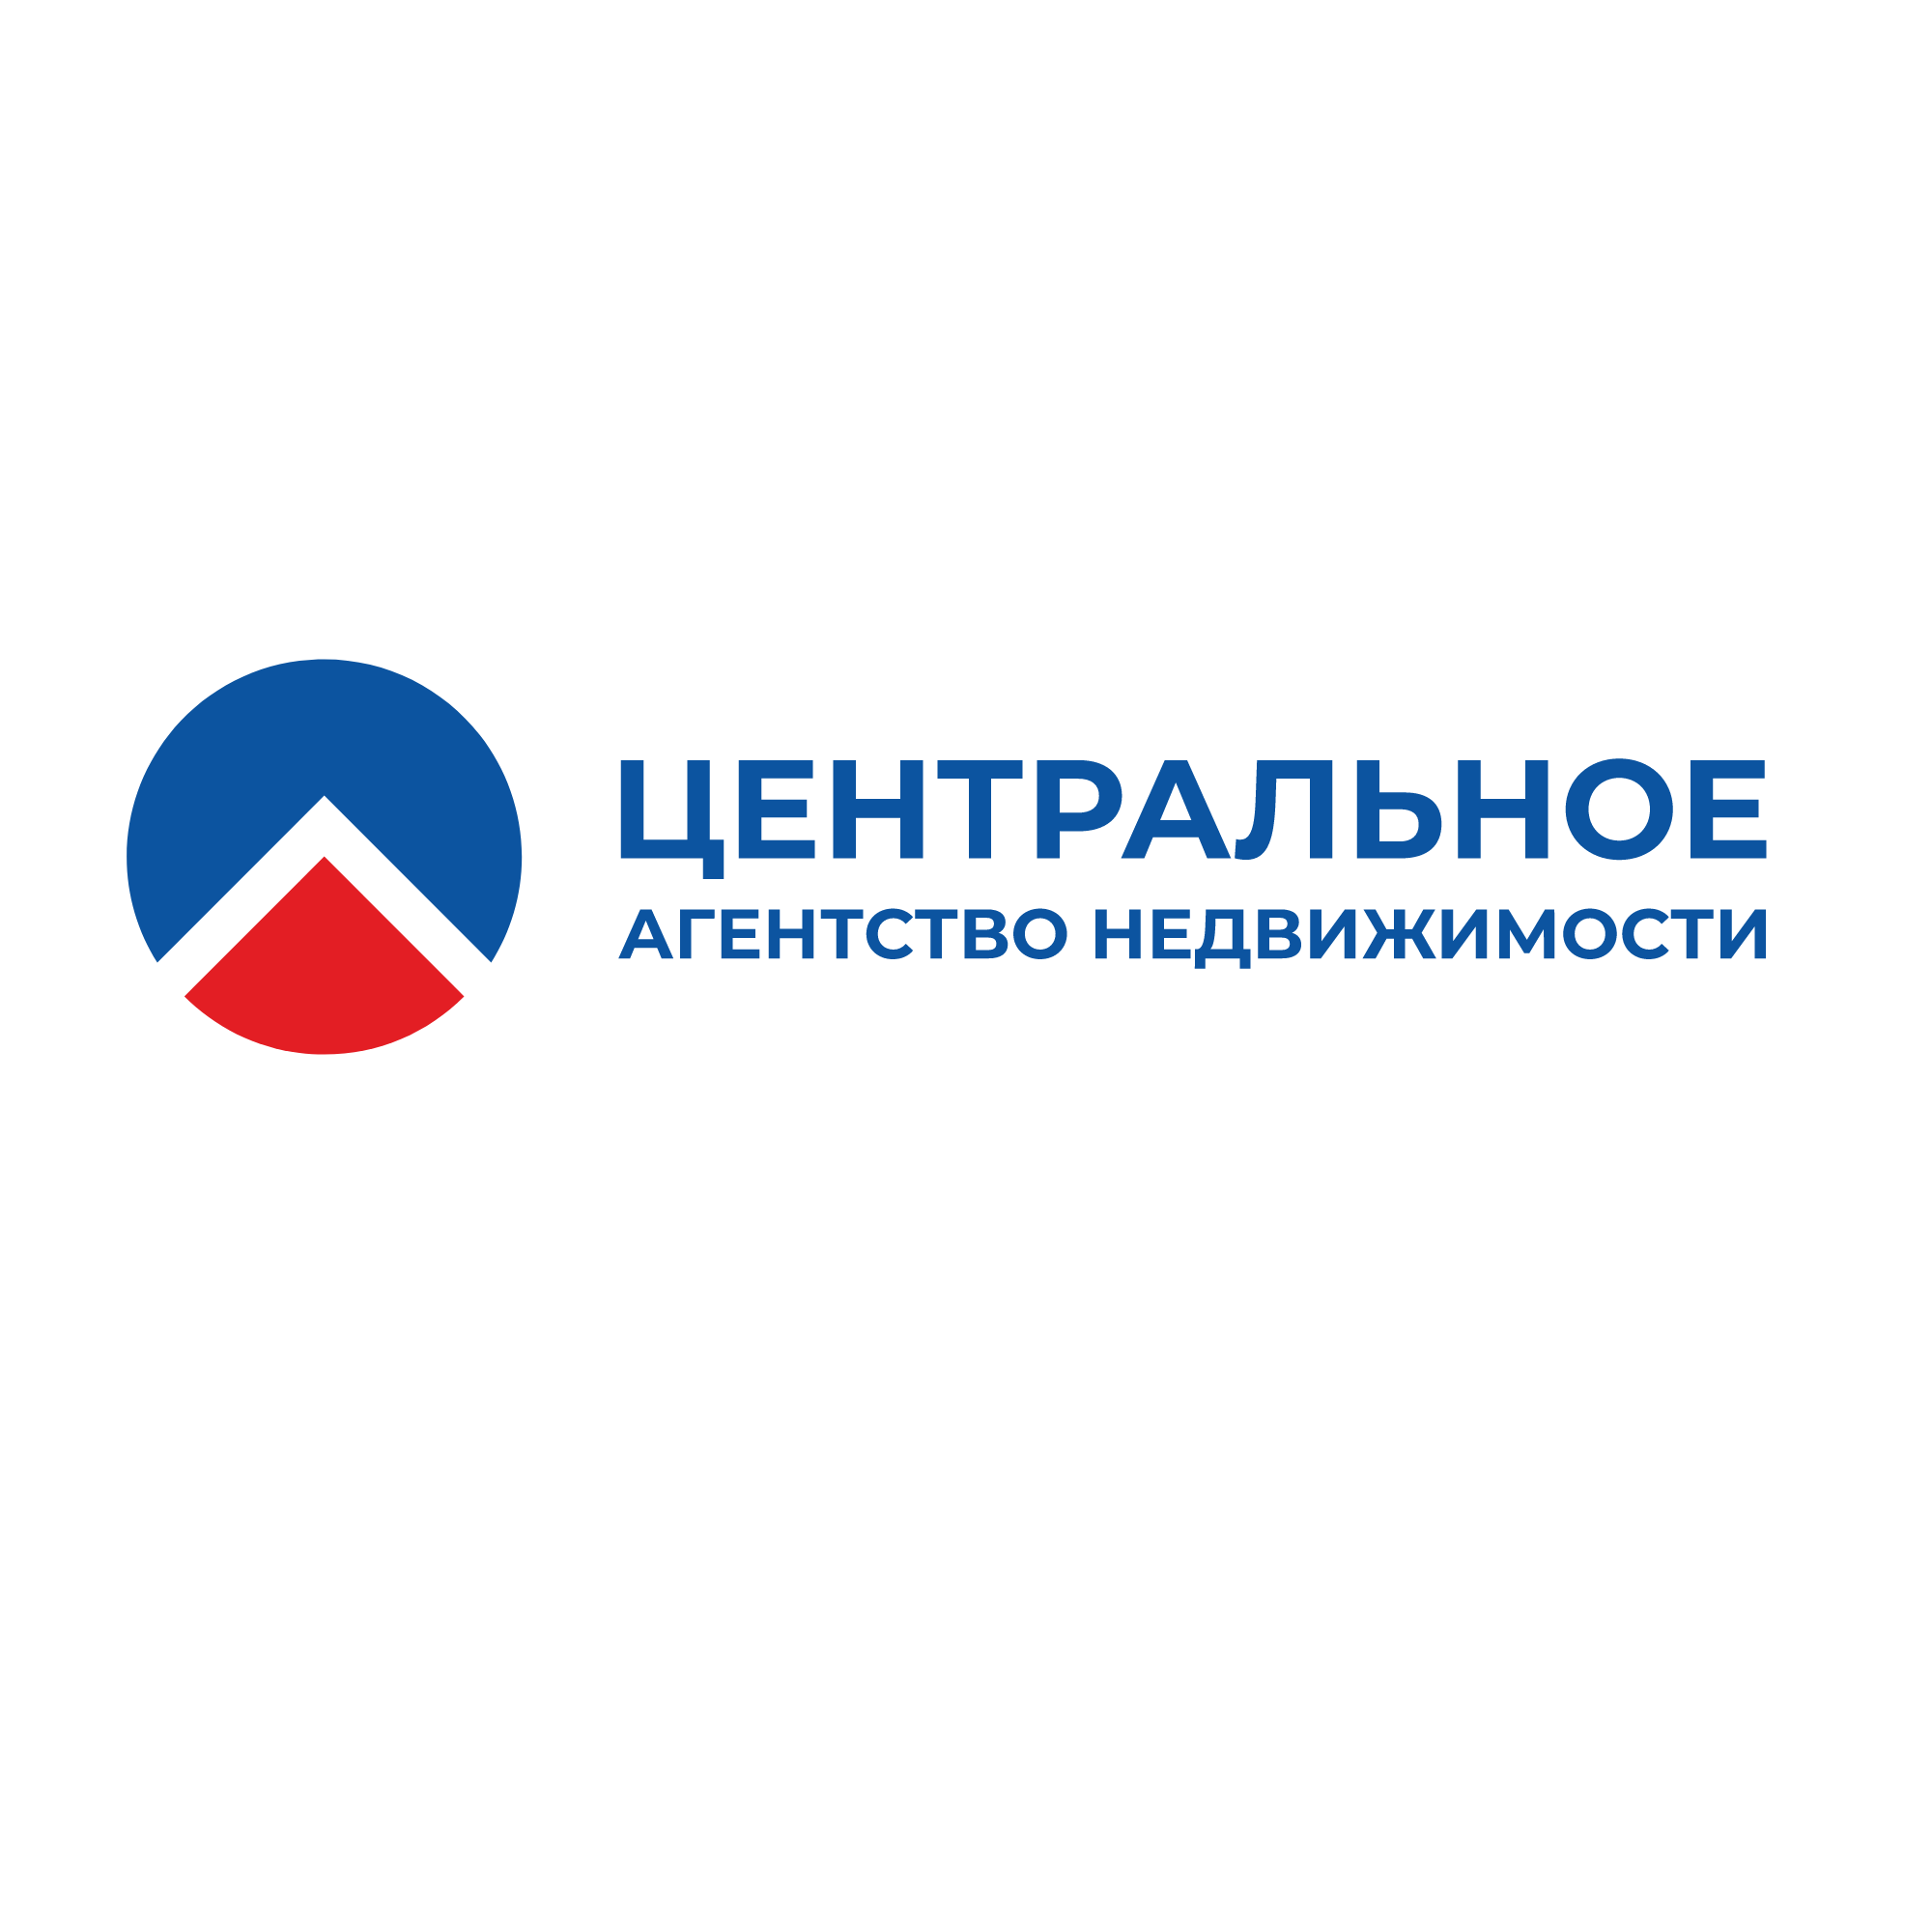 Фото / логотип АН Центральное агентство недвижимости на Морском проспекте 38, Новосибирск